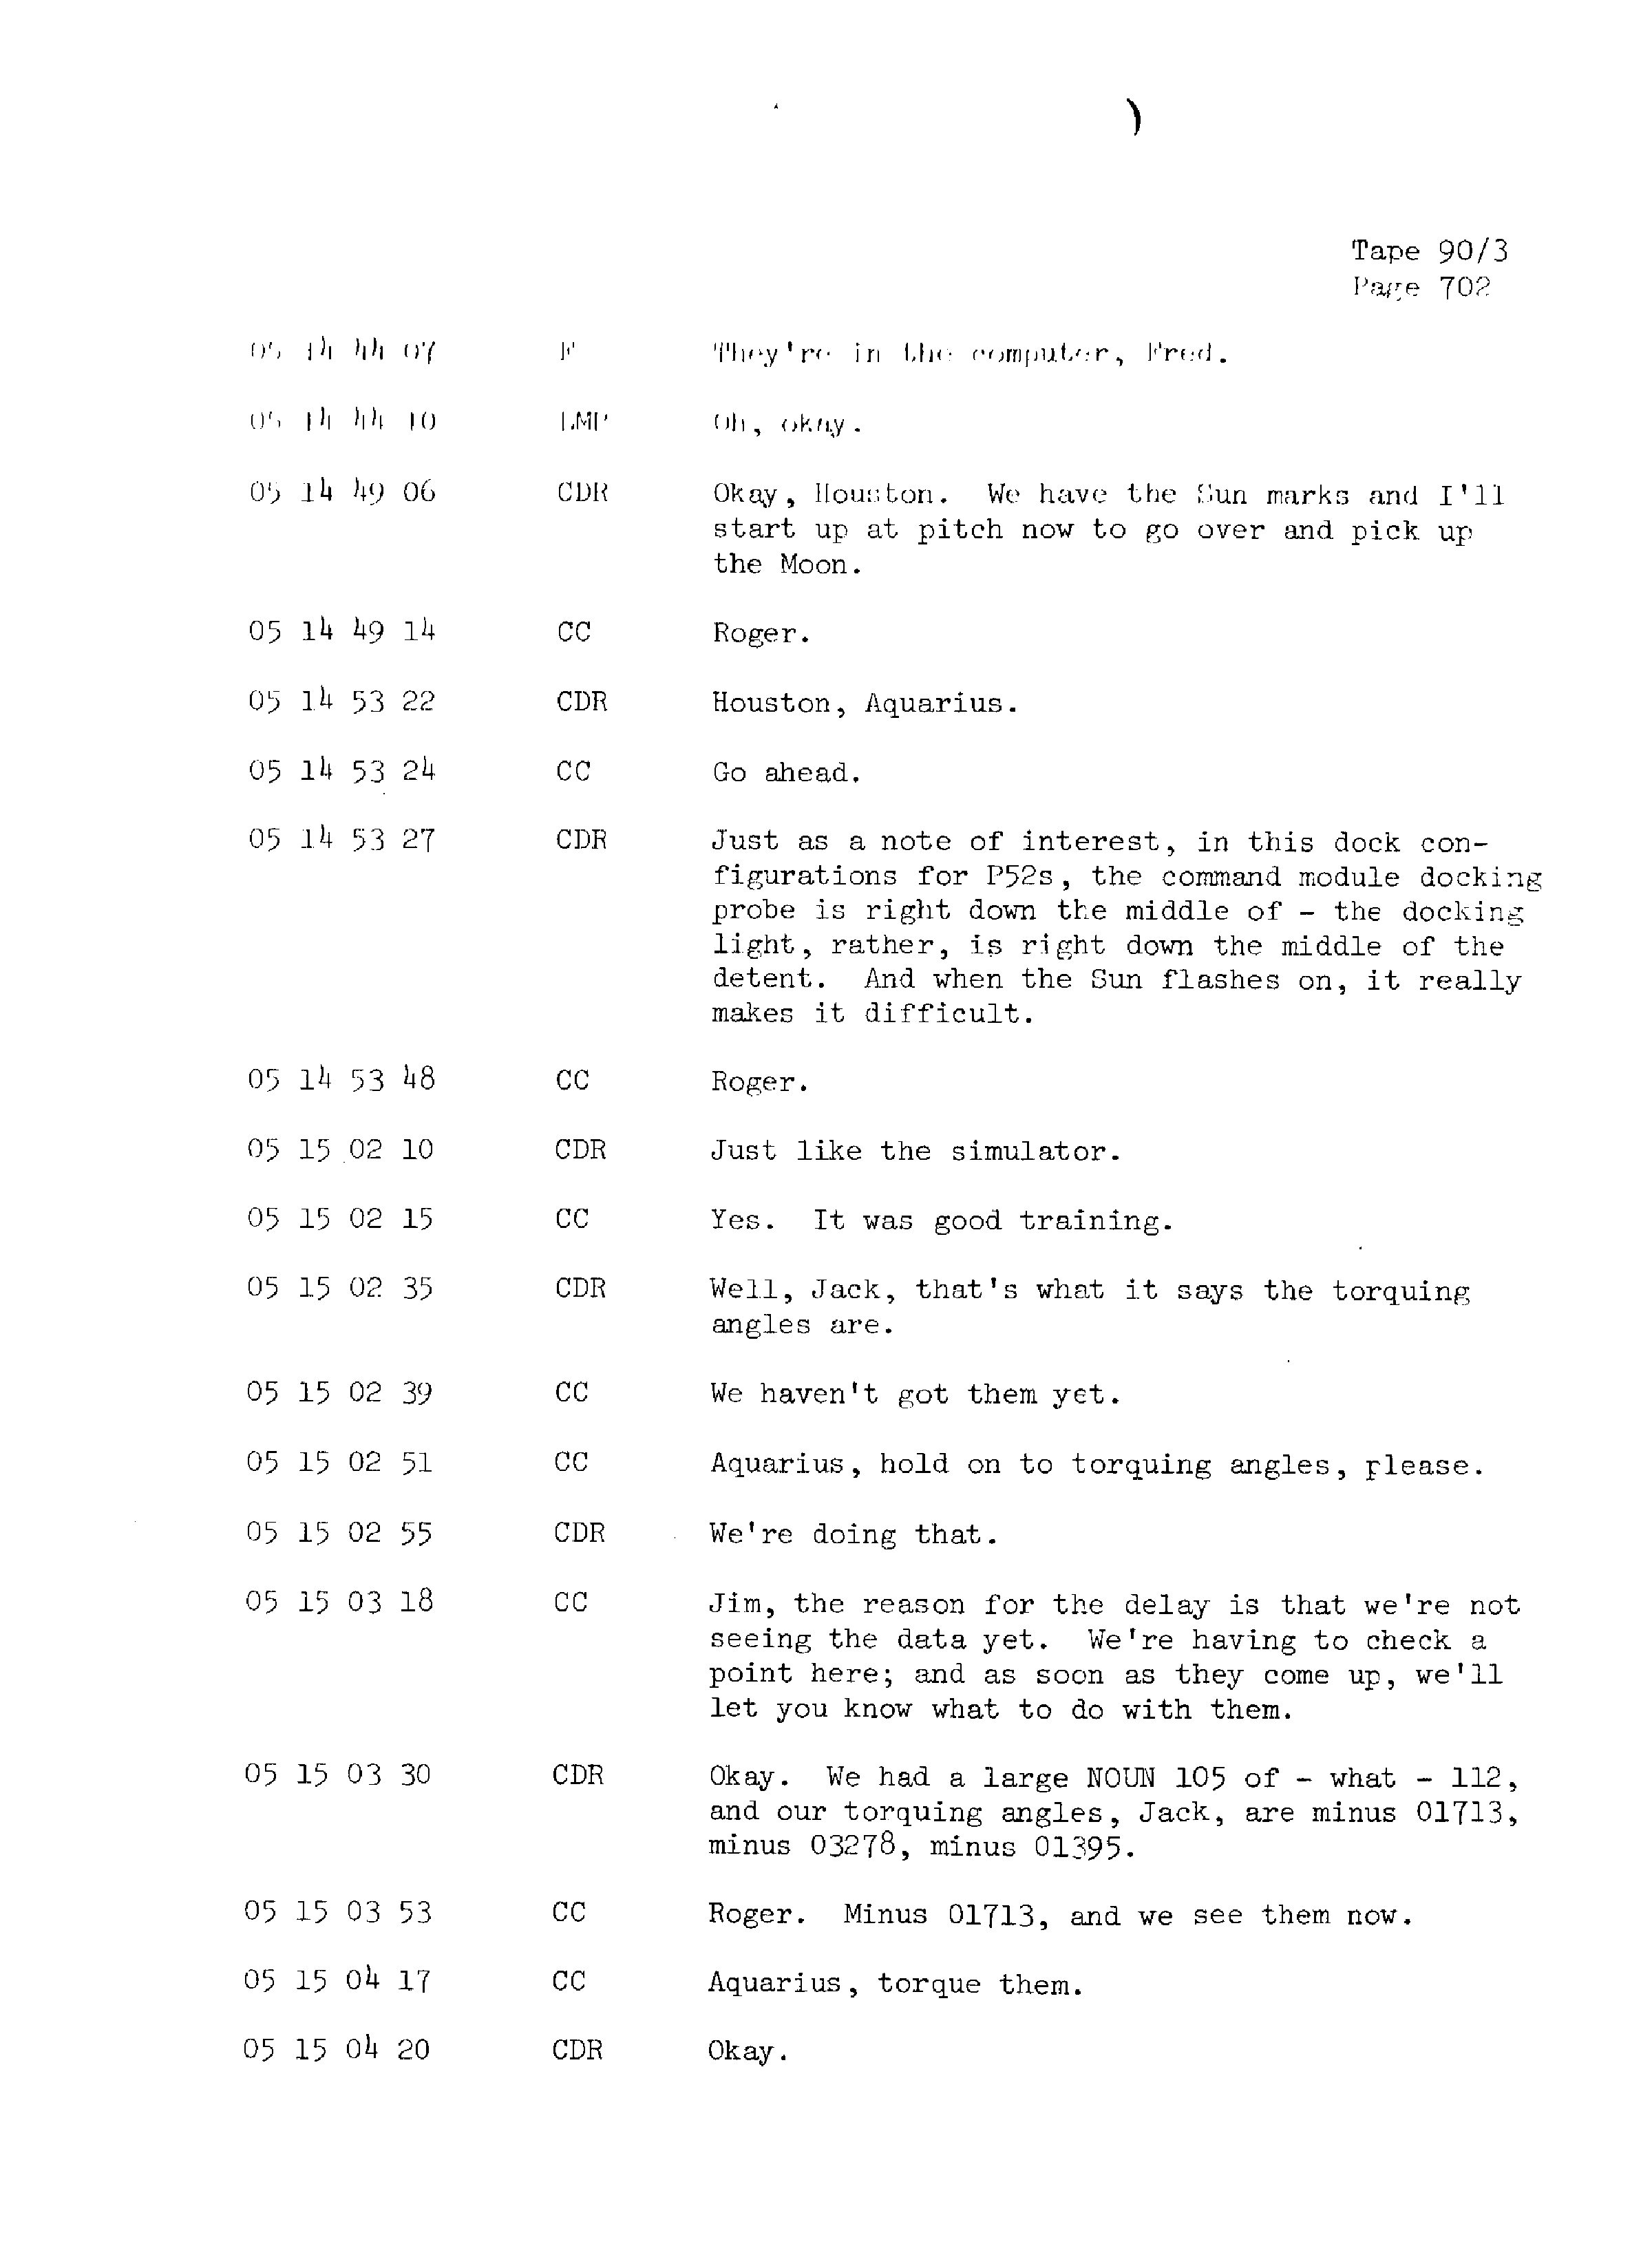 Page 709 of Apollo 13’s original transcript